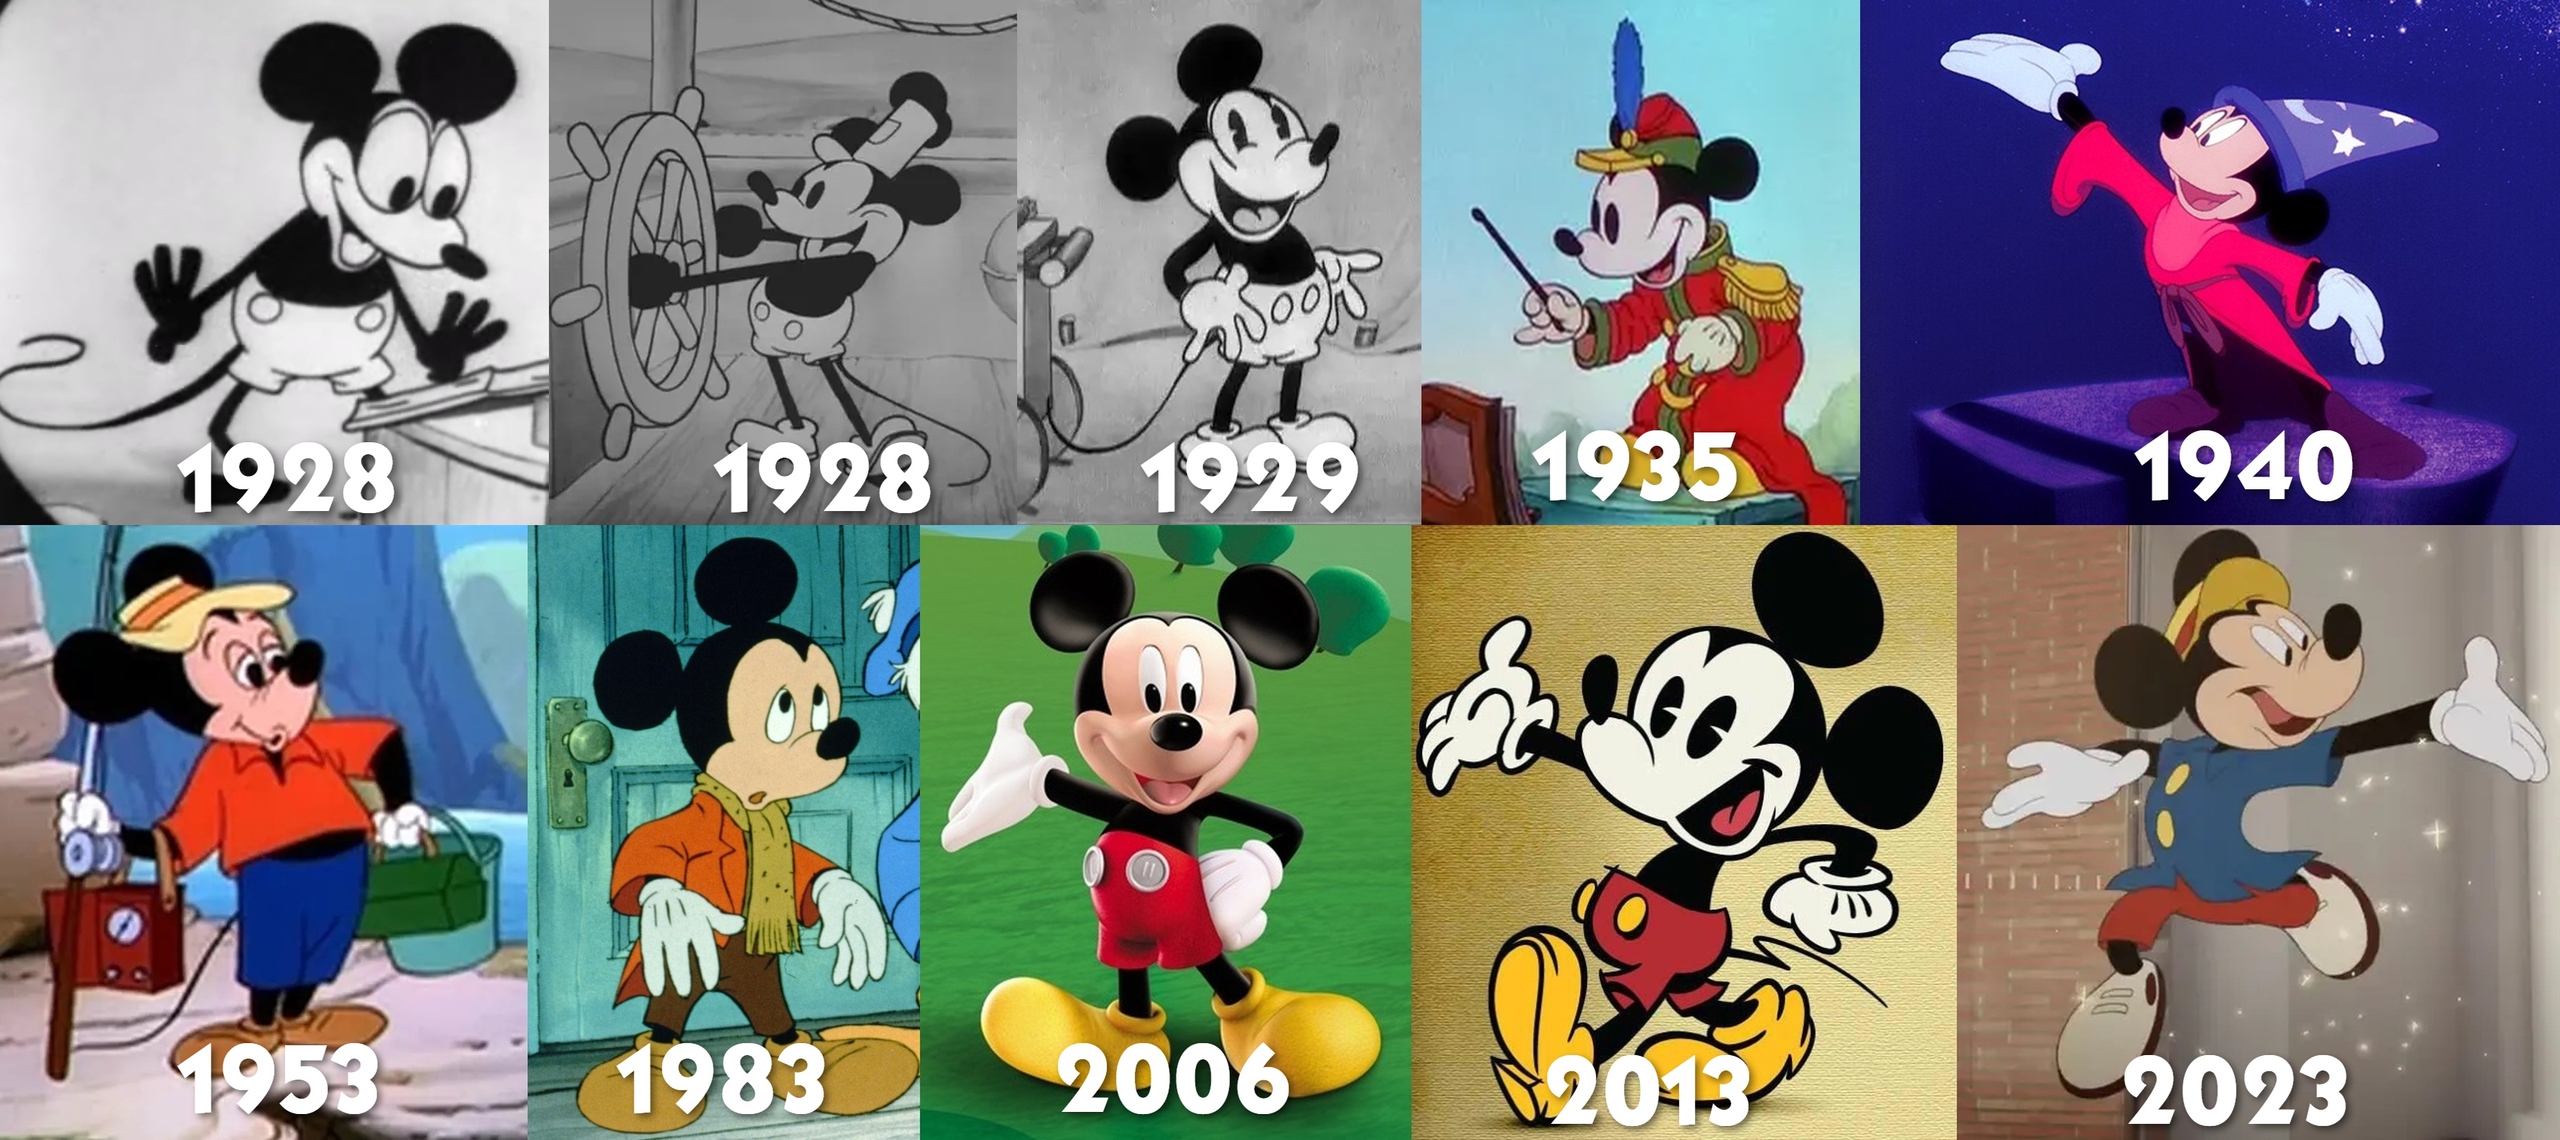 chuột mickey - Hình ảnh hoạt hình grunge của nhân vật chuột Minnie png tải  về - Miễn phí trong suốt Chuột Mickey png Tải về.